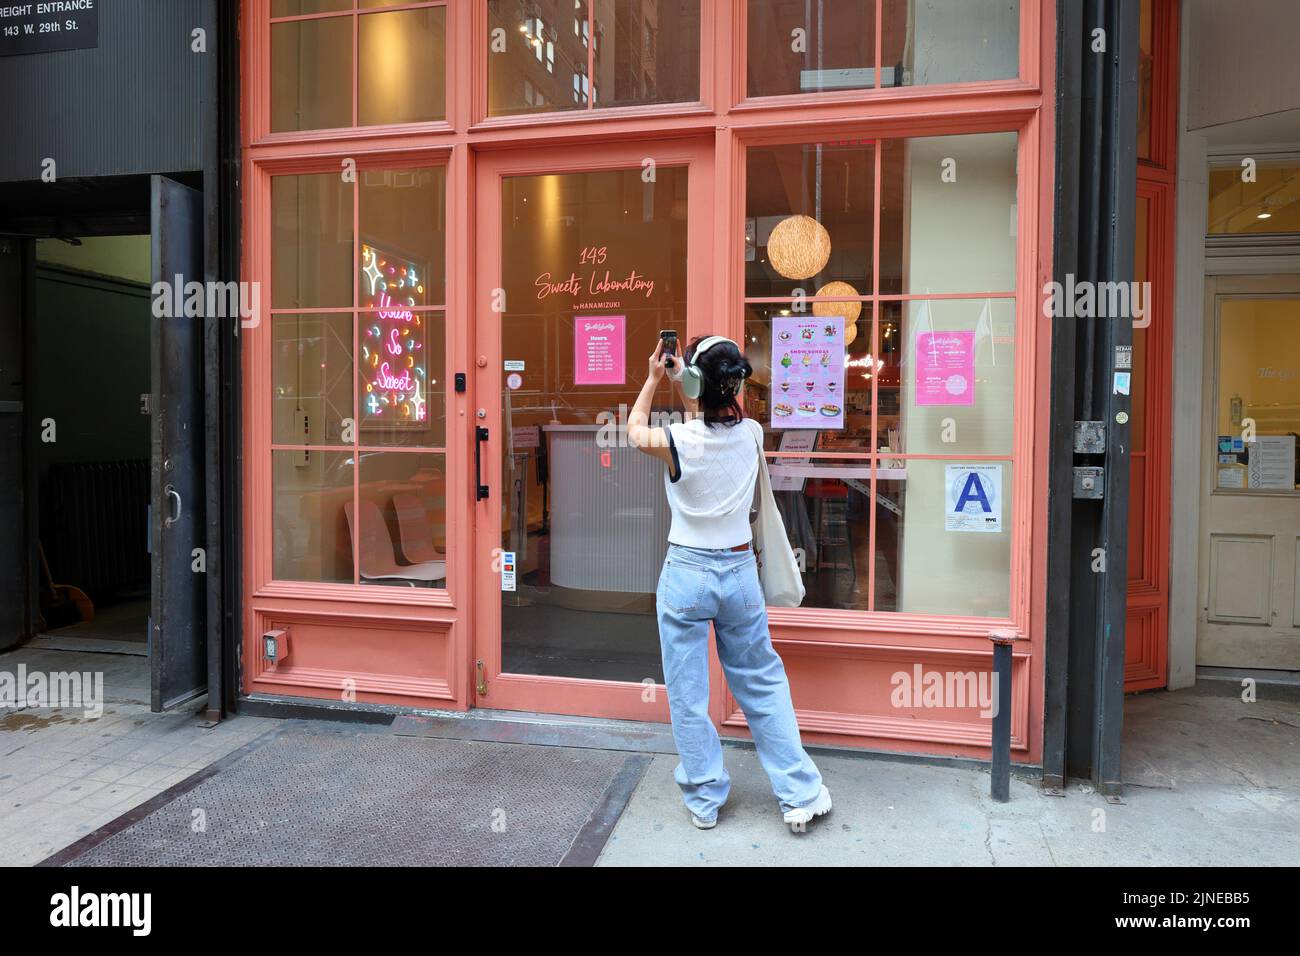 Il laboratorio dei dolci di Hanamizuki, 143 W 29th St, New York, New York. Il magazzino esterno di un bar di dessert giapponese nel quartiere Chelsea di Manhattan. Foto Stock